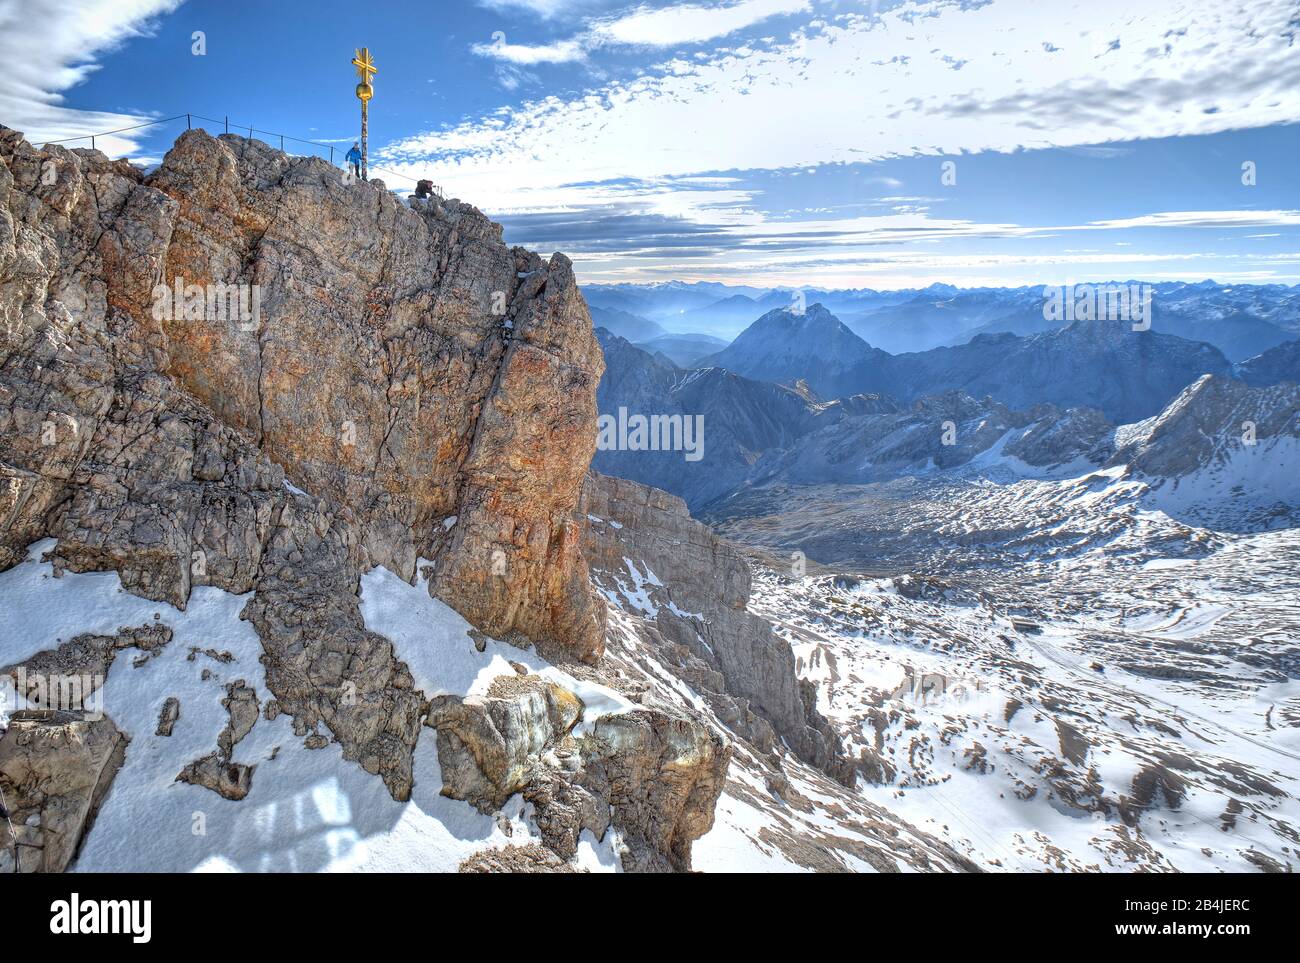 Vertice dello Zugspitze (2962m) con croce sommitale, Grainau, Wetterstein Mountains, Werdenfelser Land, alta Baviera, Baviera, Germania Foto Stock